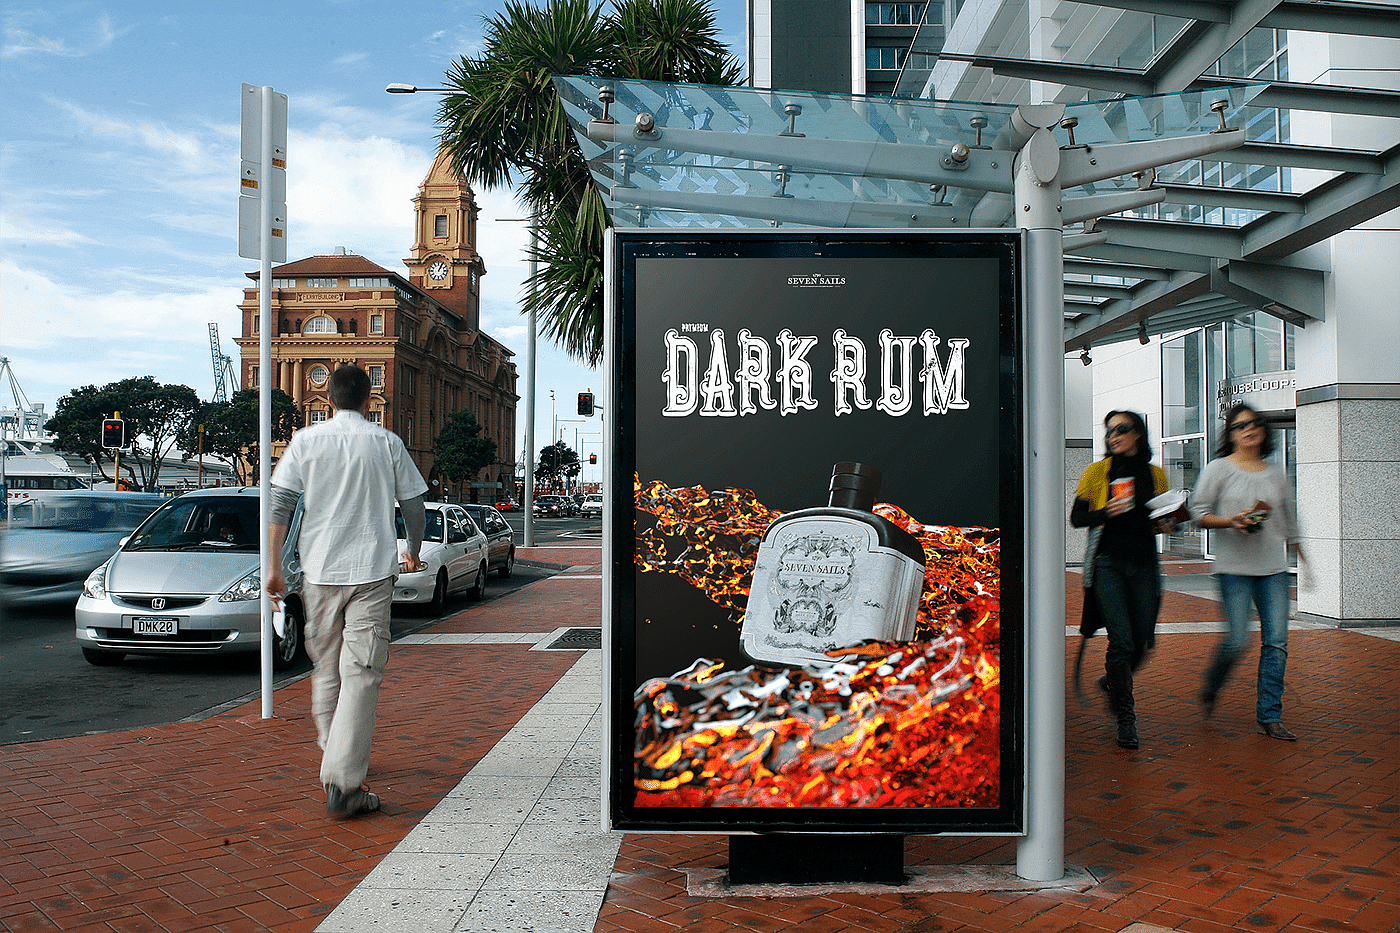 朗姆酒，Rum marketing，cgi，渲染效果图，包装设计，酒瓶，